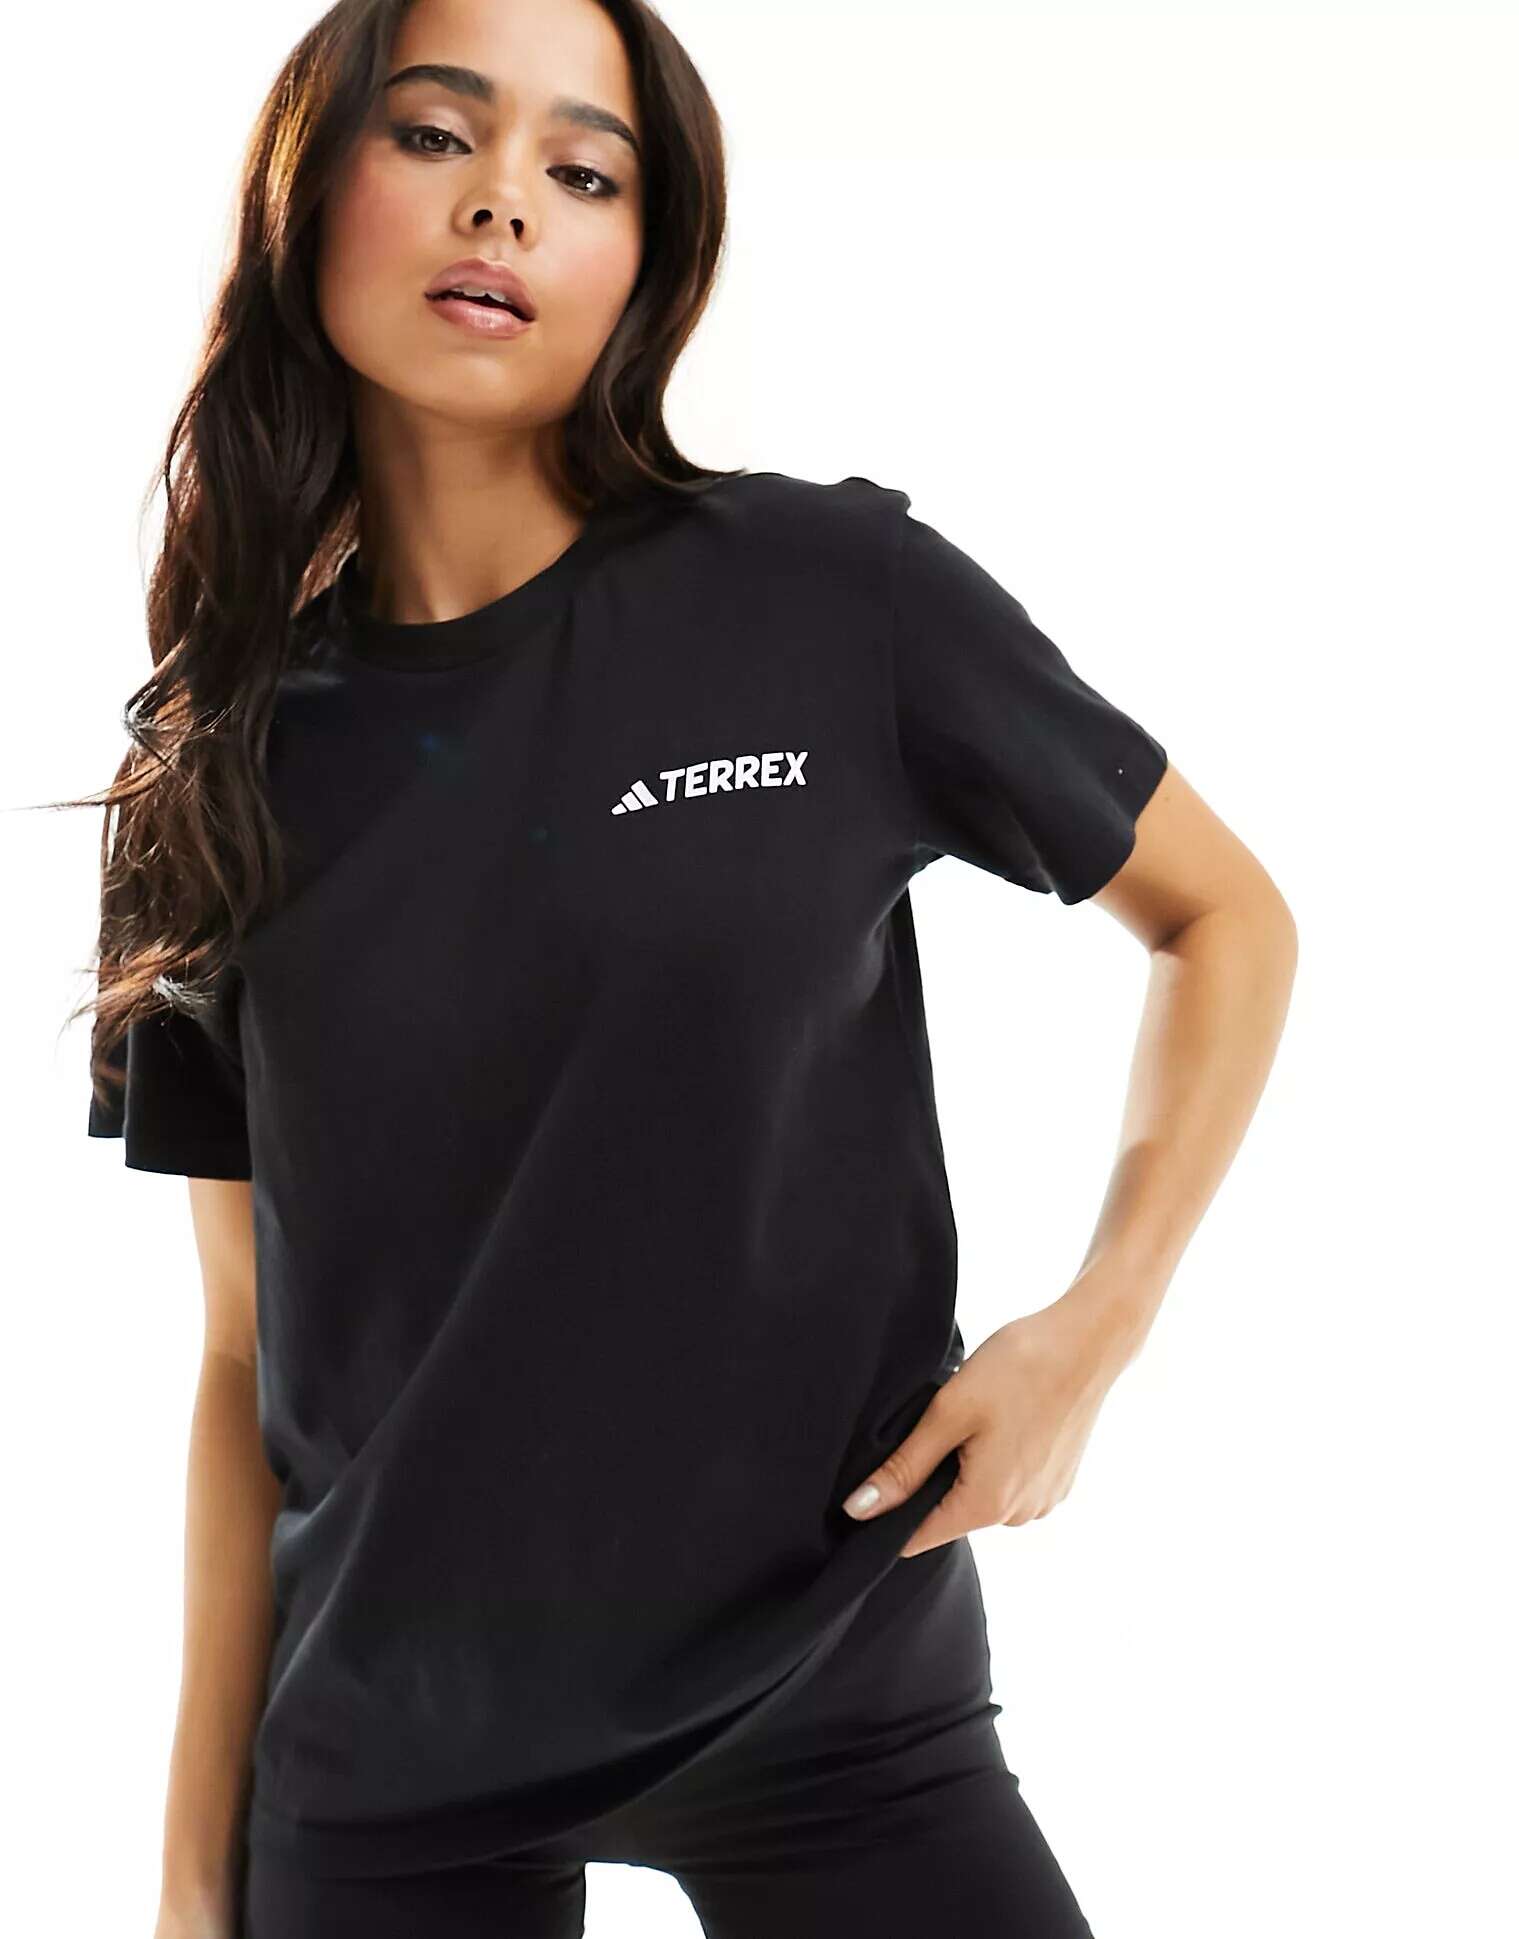 Черная уличная футболка adidas Terex adidas performance